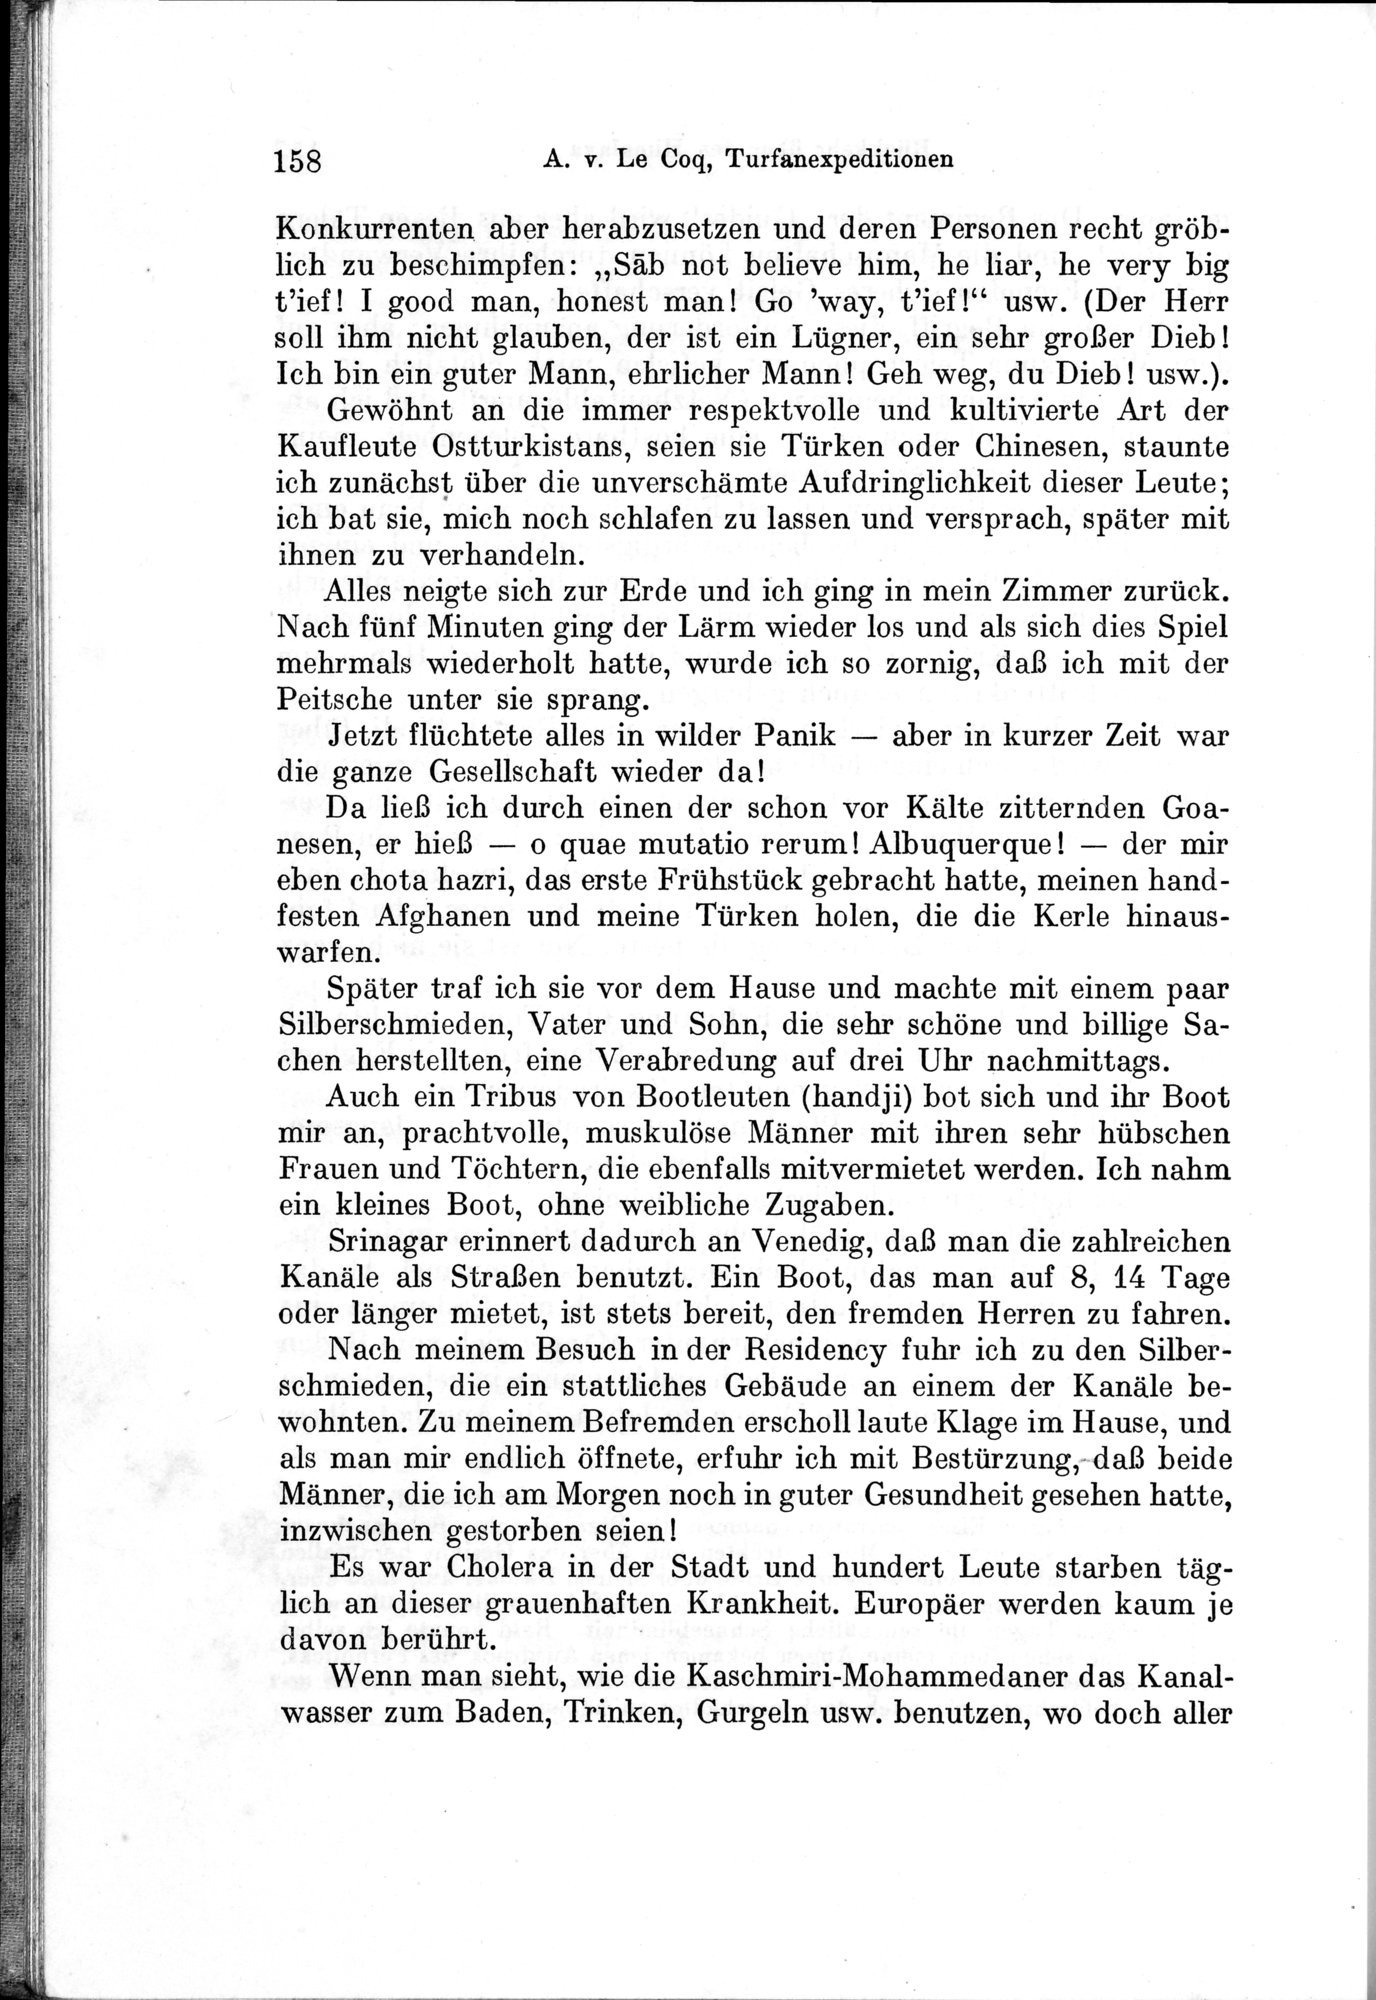 Auf Hellas Spuren in Ostturkistan : vol.1 / Page 226 (Grayscale High Resolution Image)